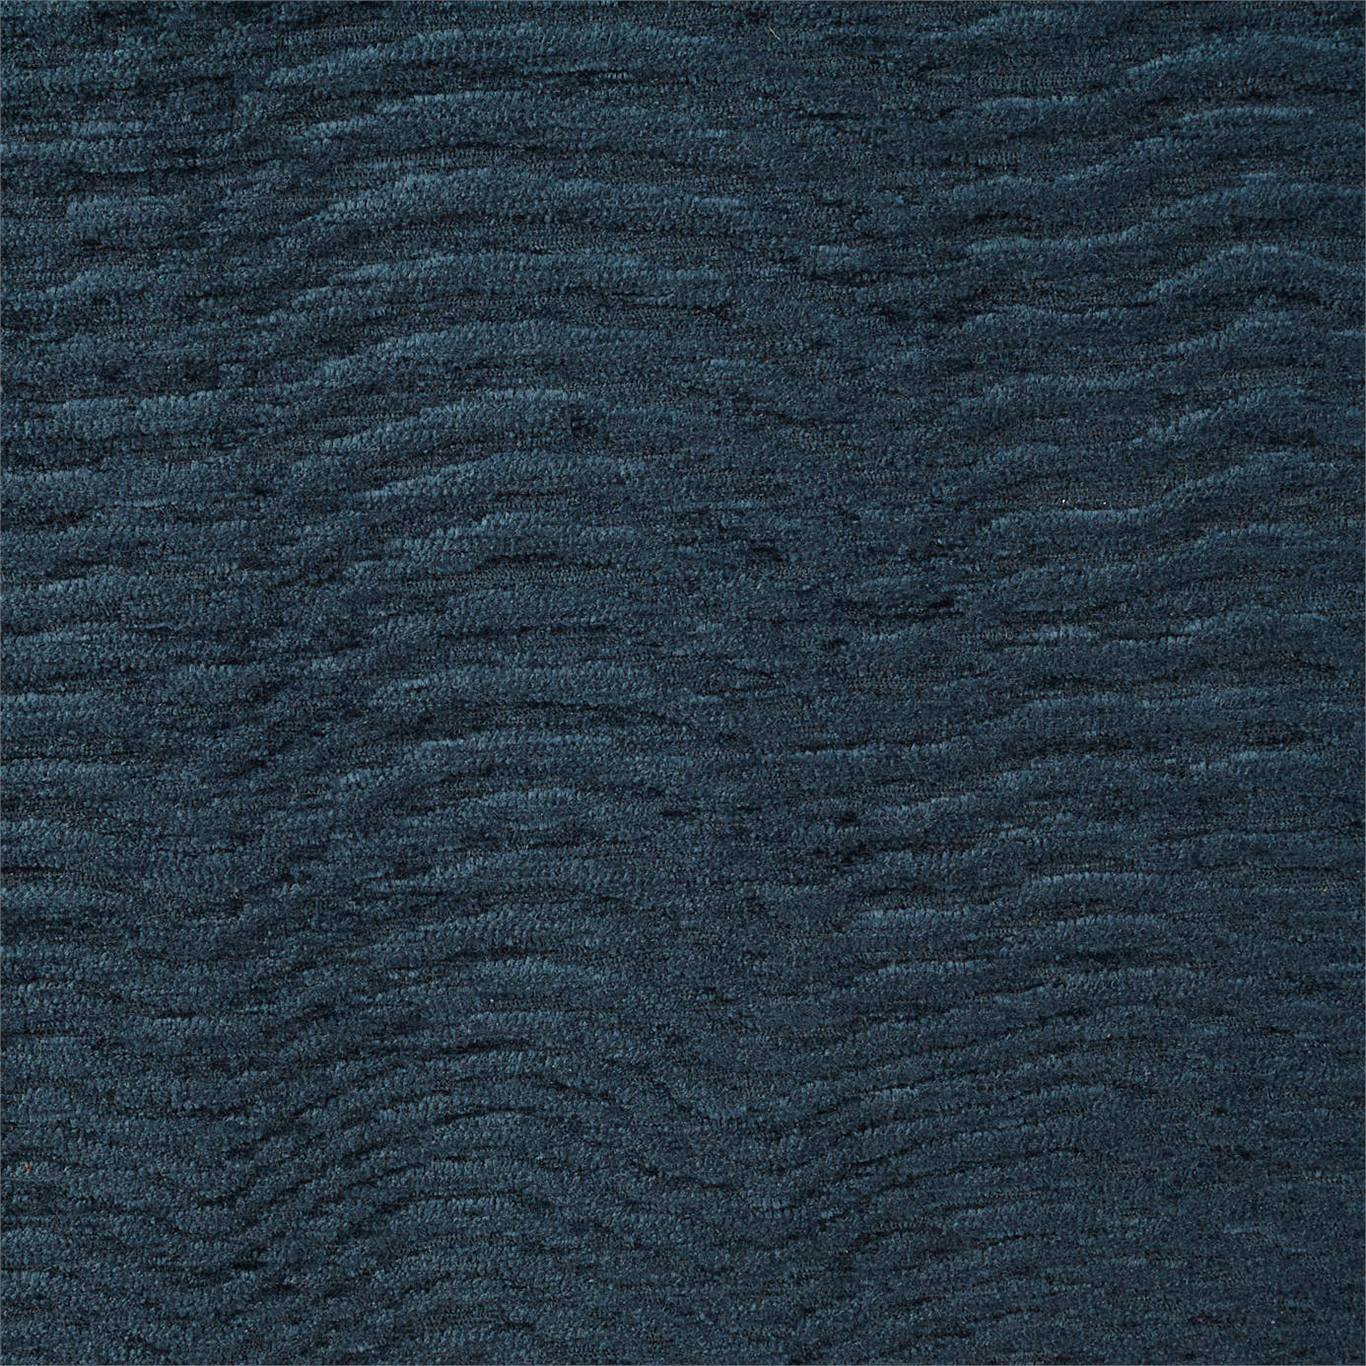 Waltz Lake Fabric by HAR